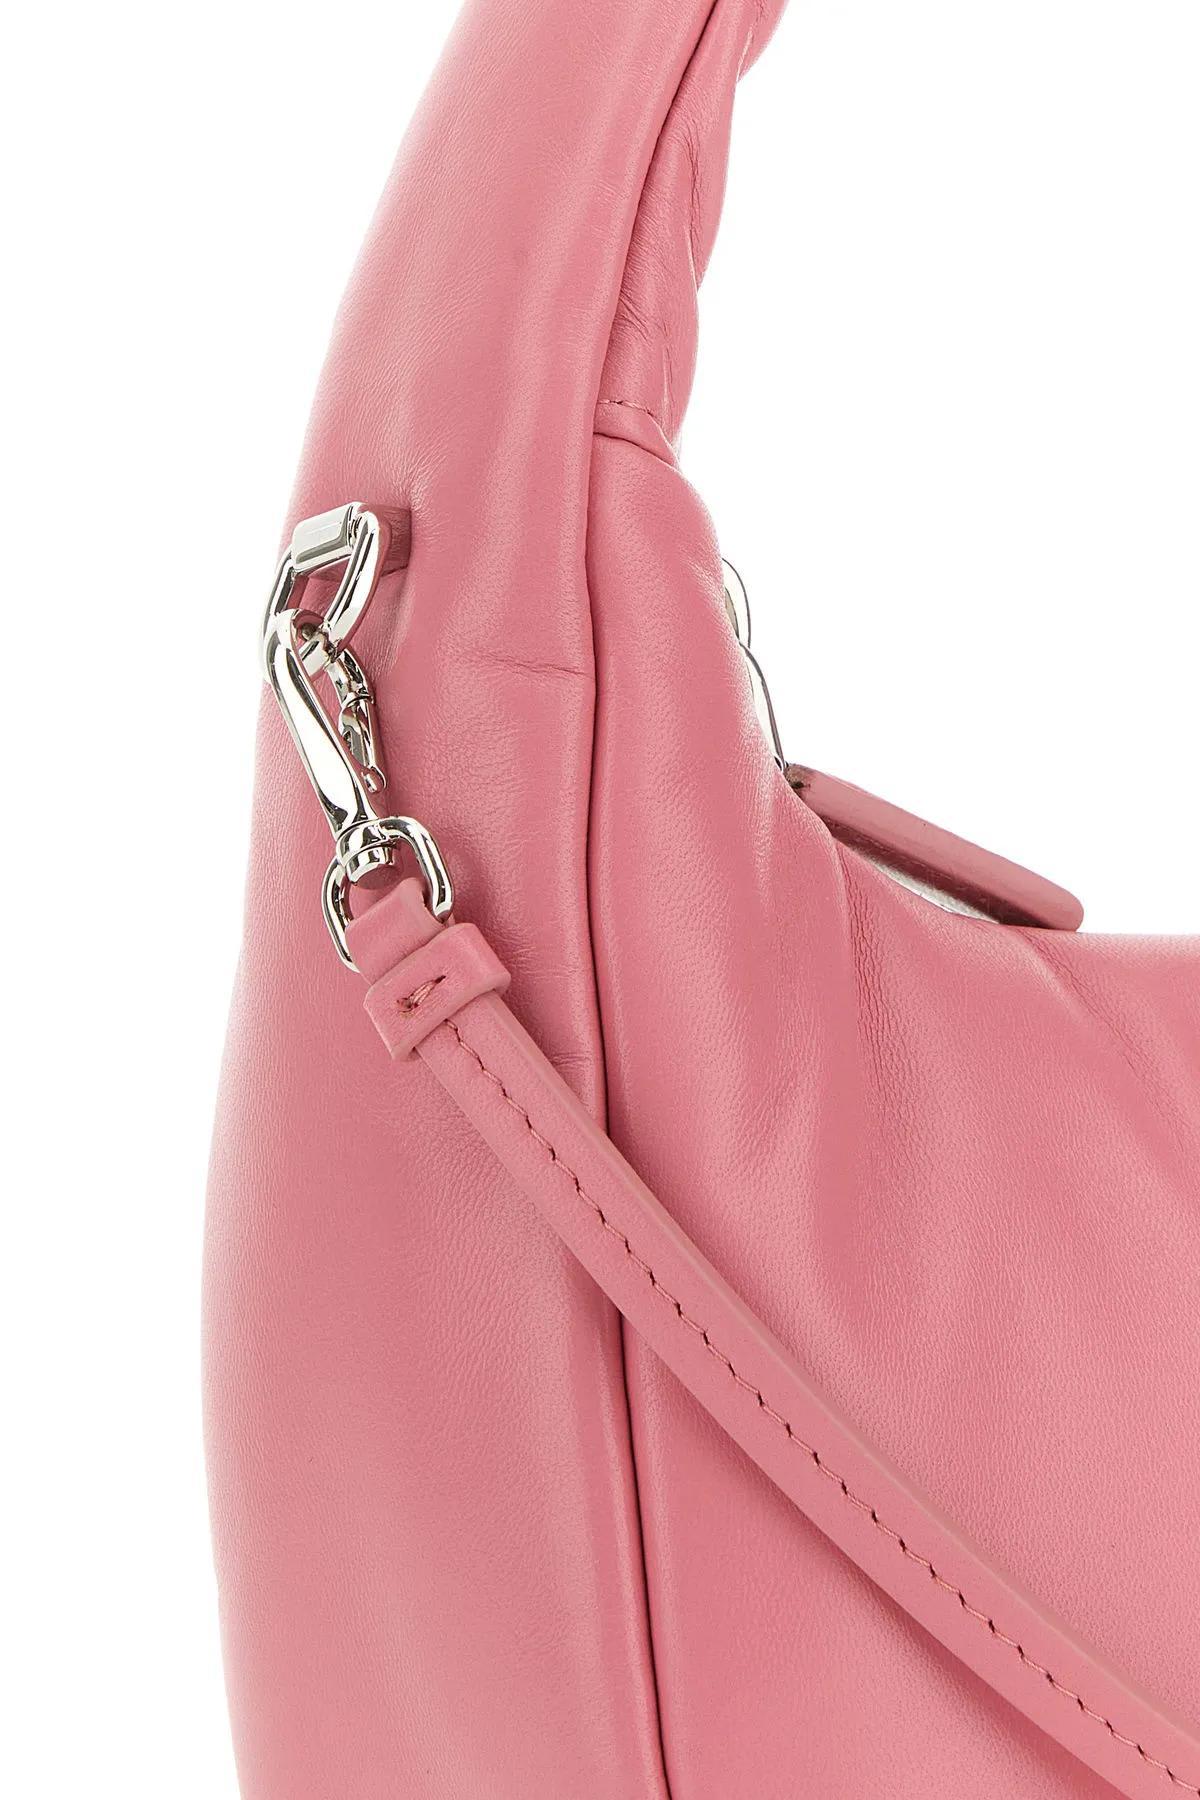 Prada Pink Nappa Leather Mini Soft Handbag